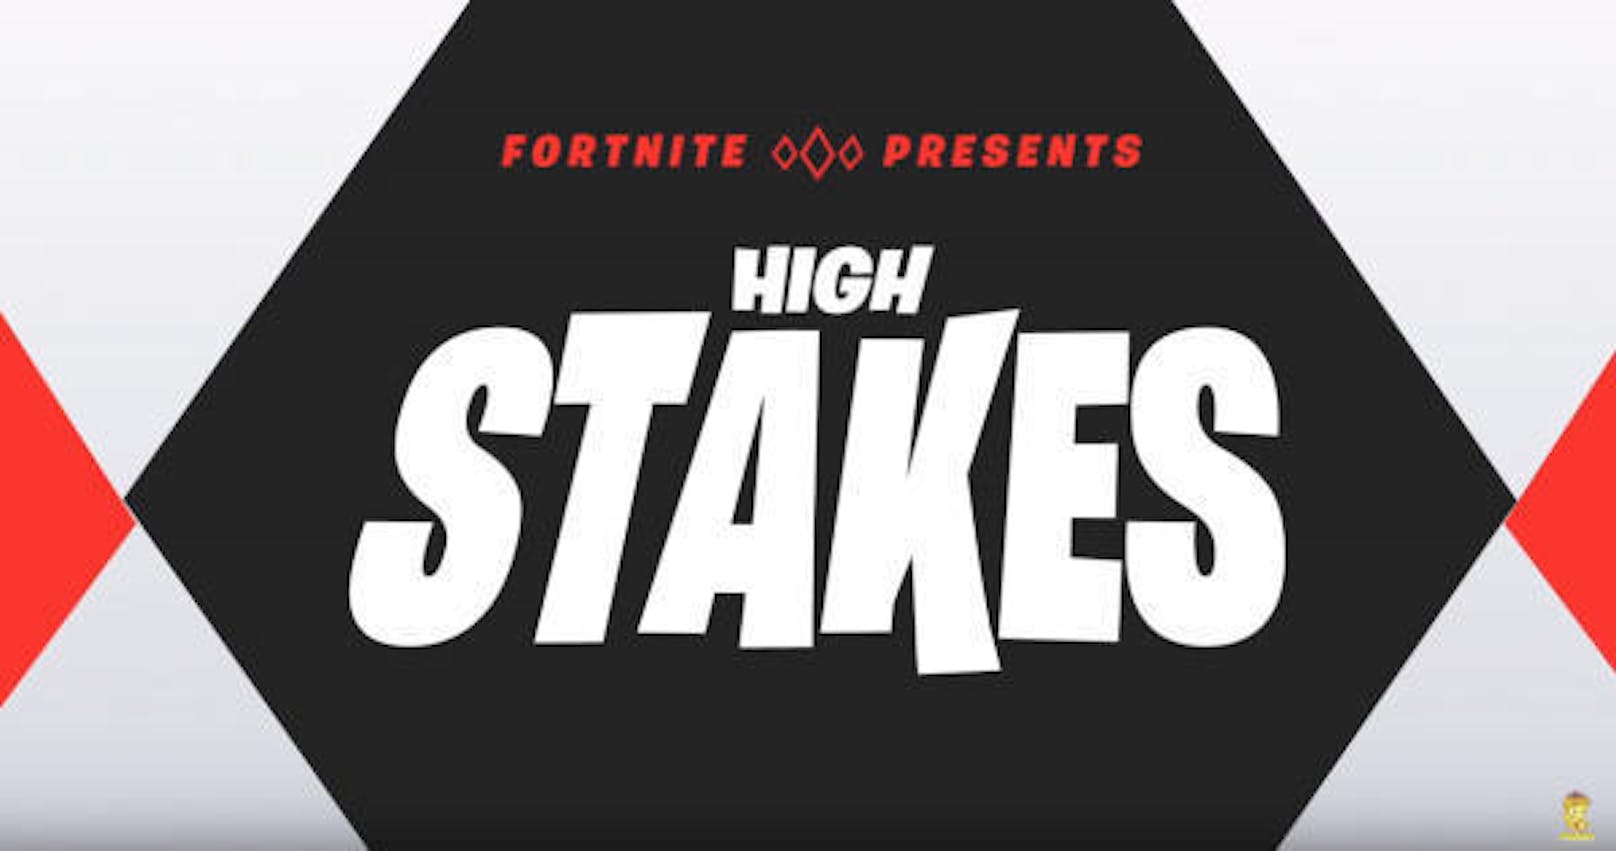 Das neue Event läuft unter dem Namen "High Stakes".